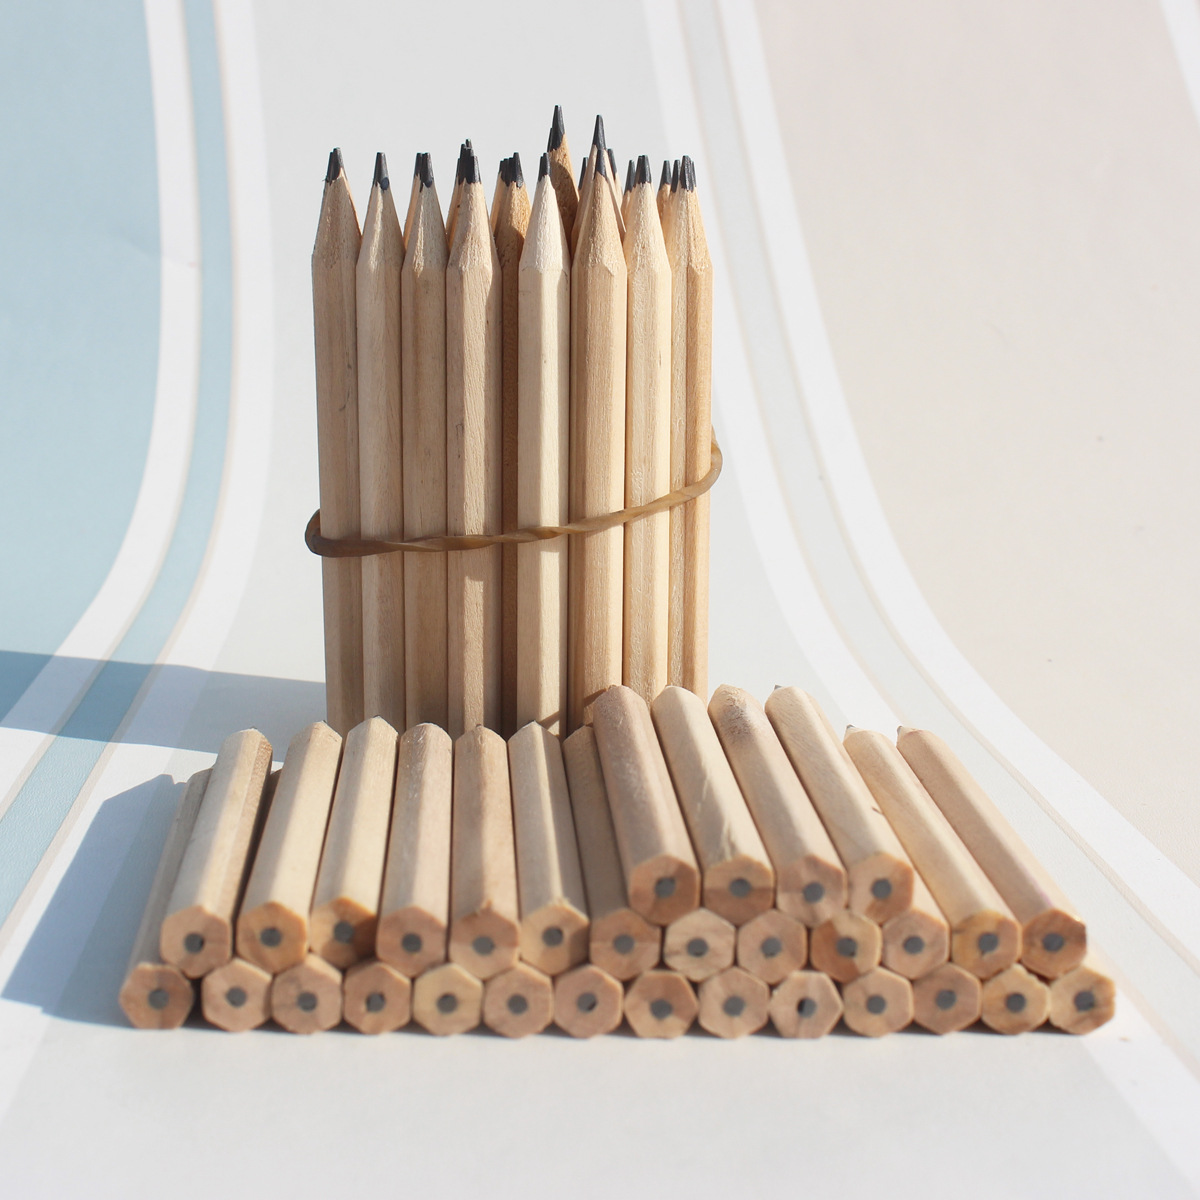 原木短铅笔定制酒店广告铅笔订制儿童礼品3.5寸小铅笔现货批发